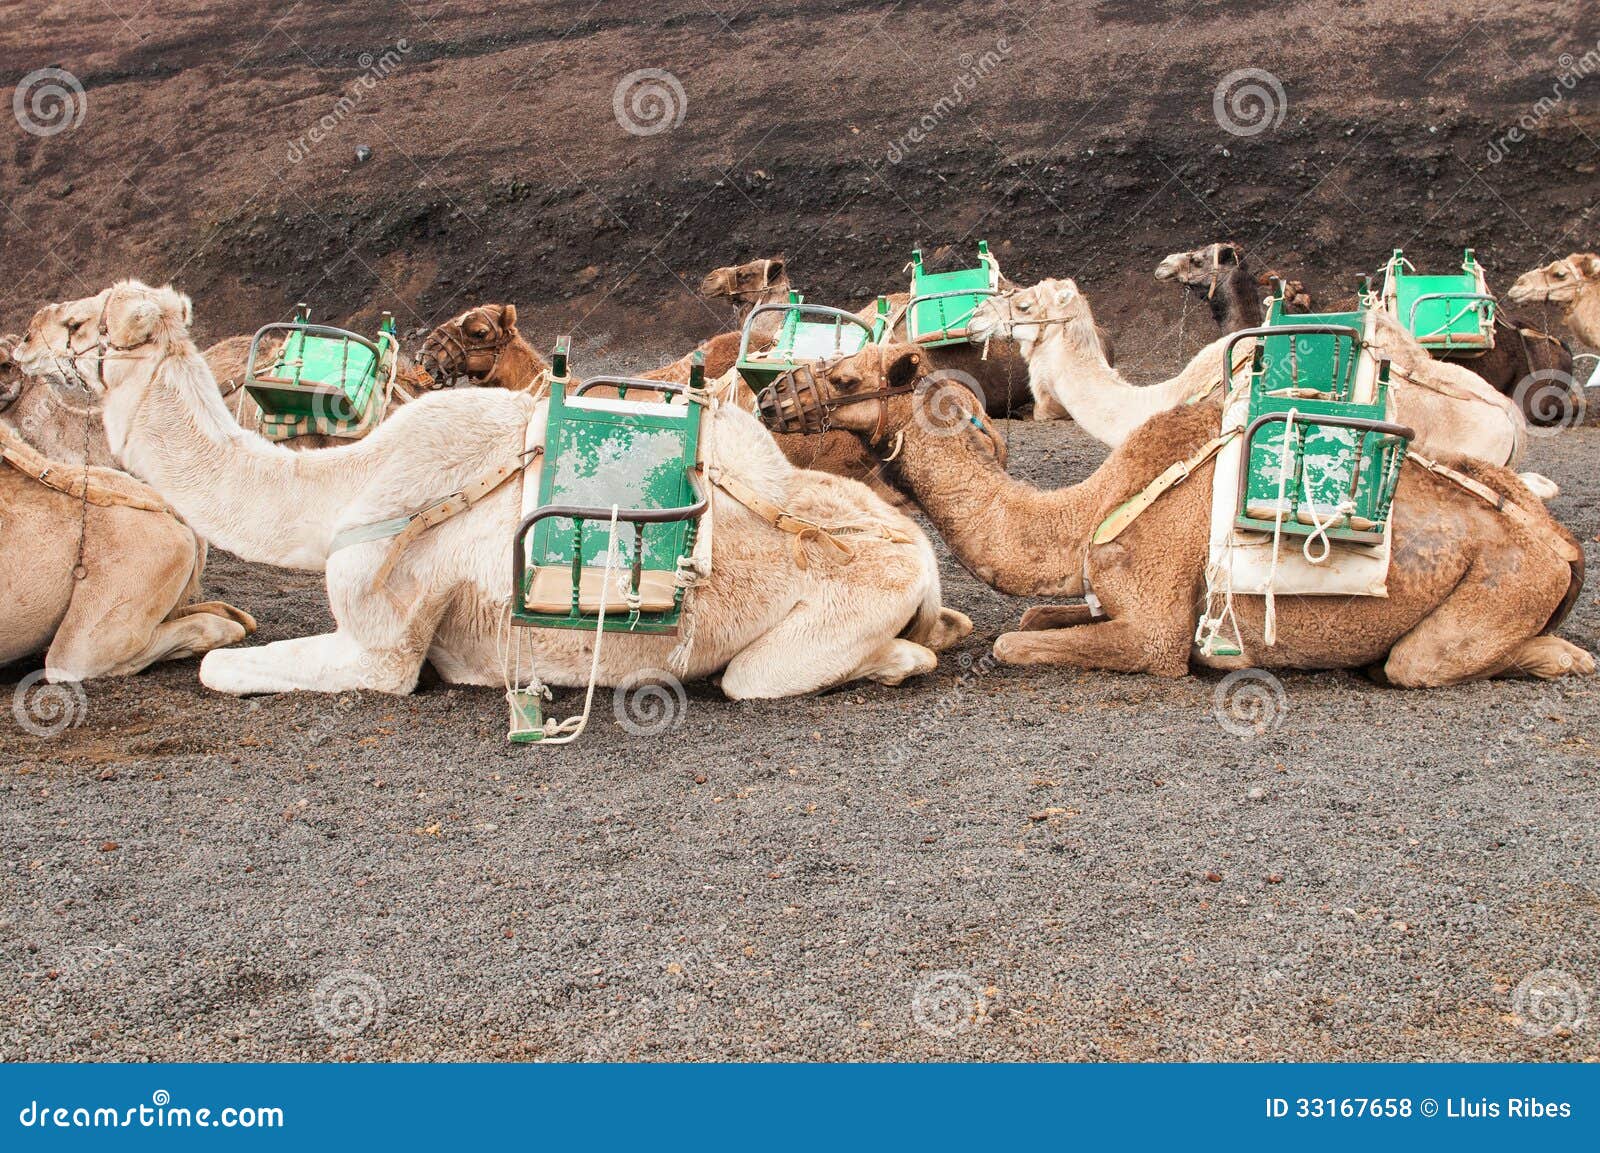 camel in lanzarote